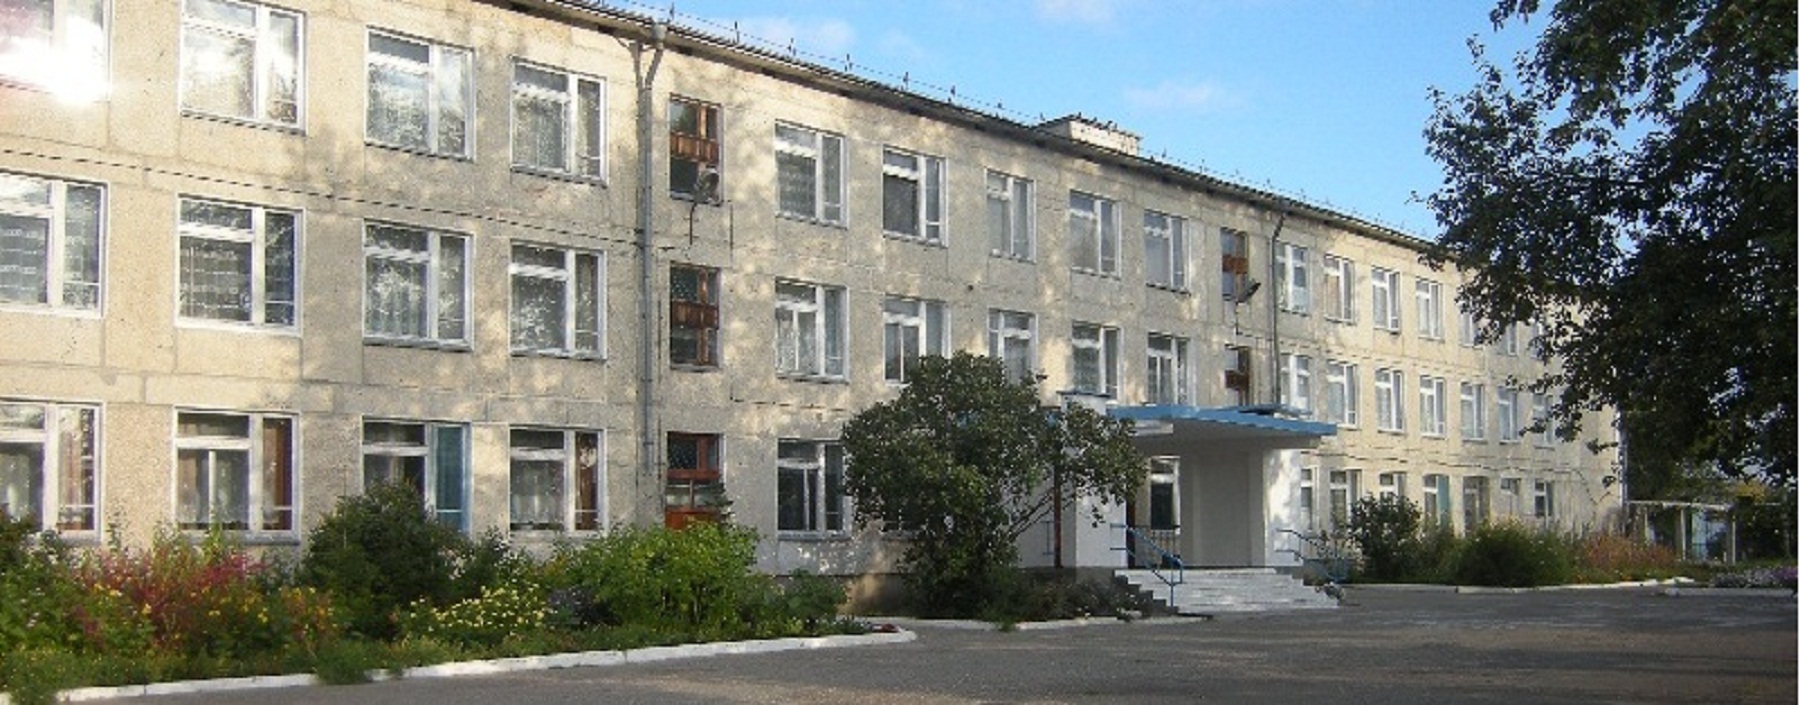 Новосидоровская школа